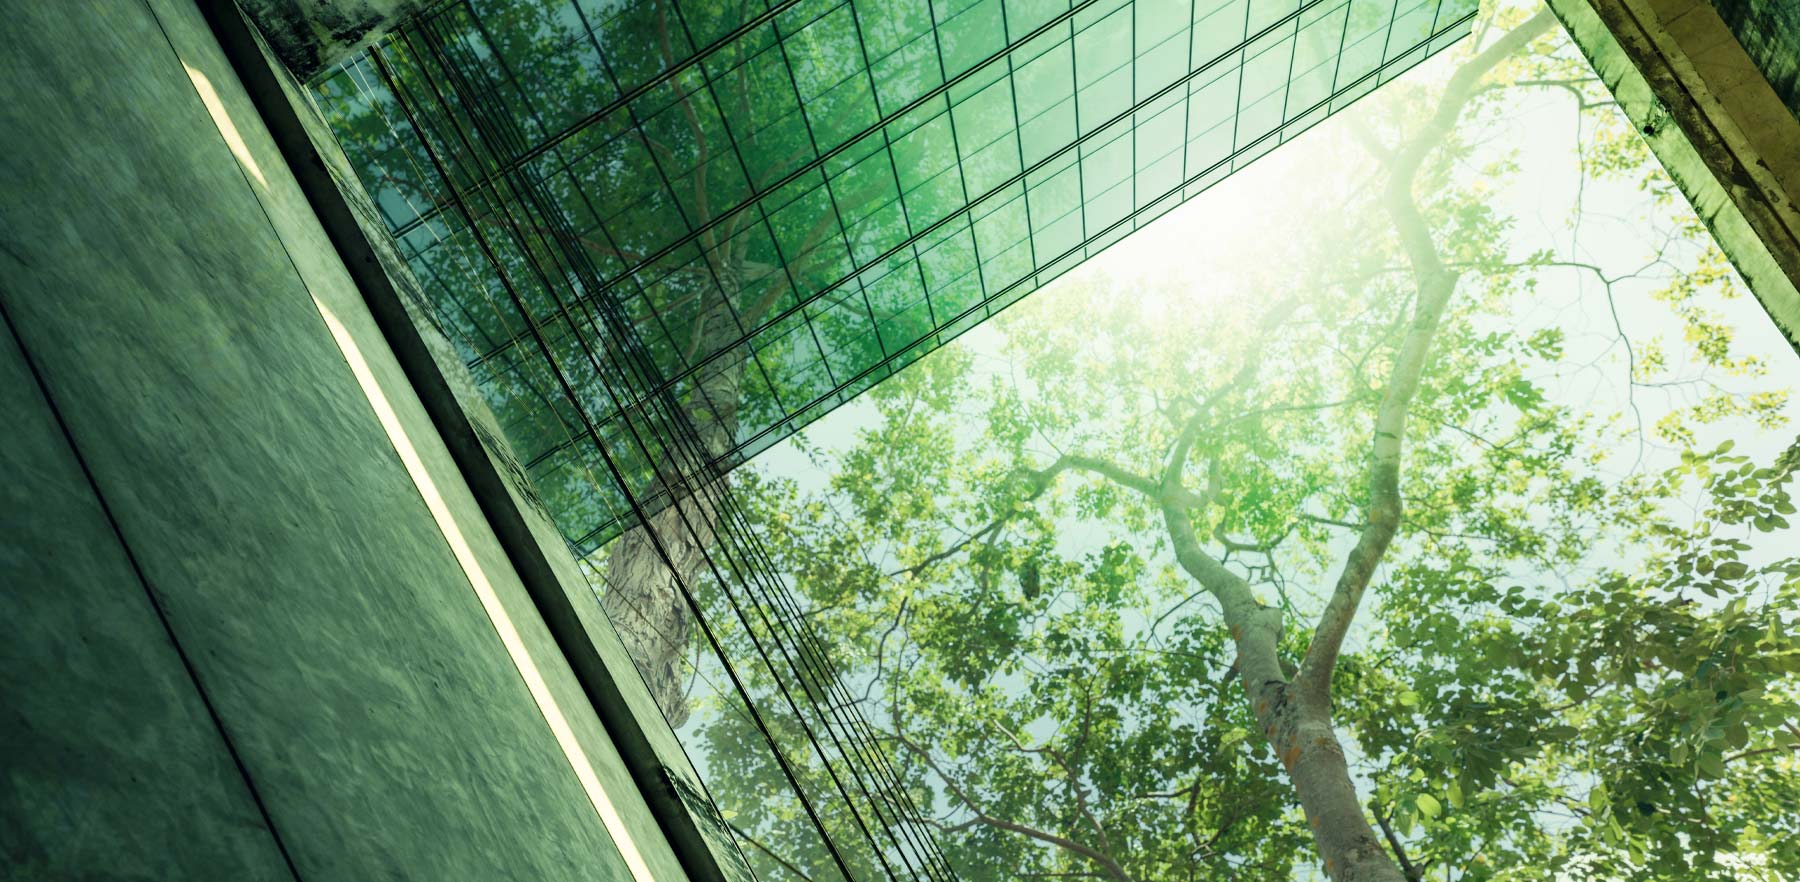 תמונה מופשטת של בניין עם חלונות זכוכית המשקפים עלווה ירוקה